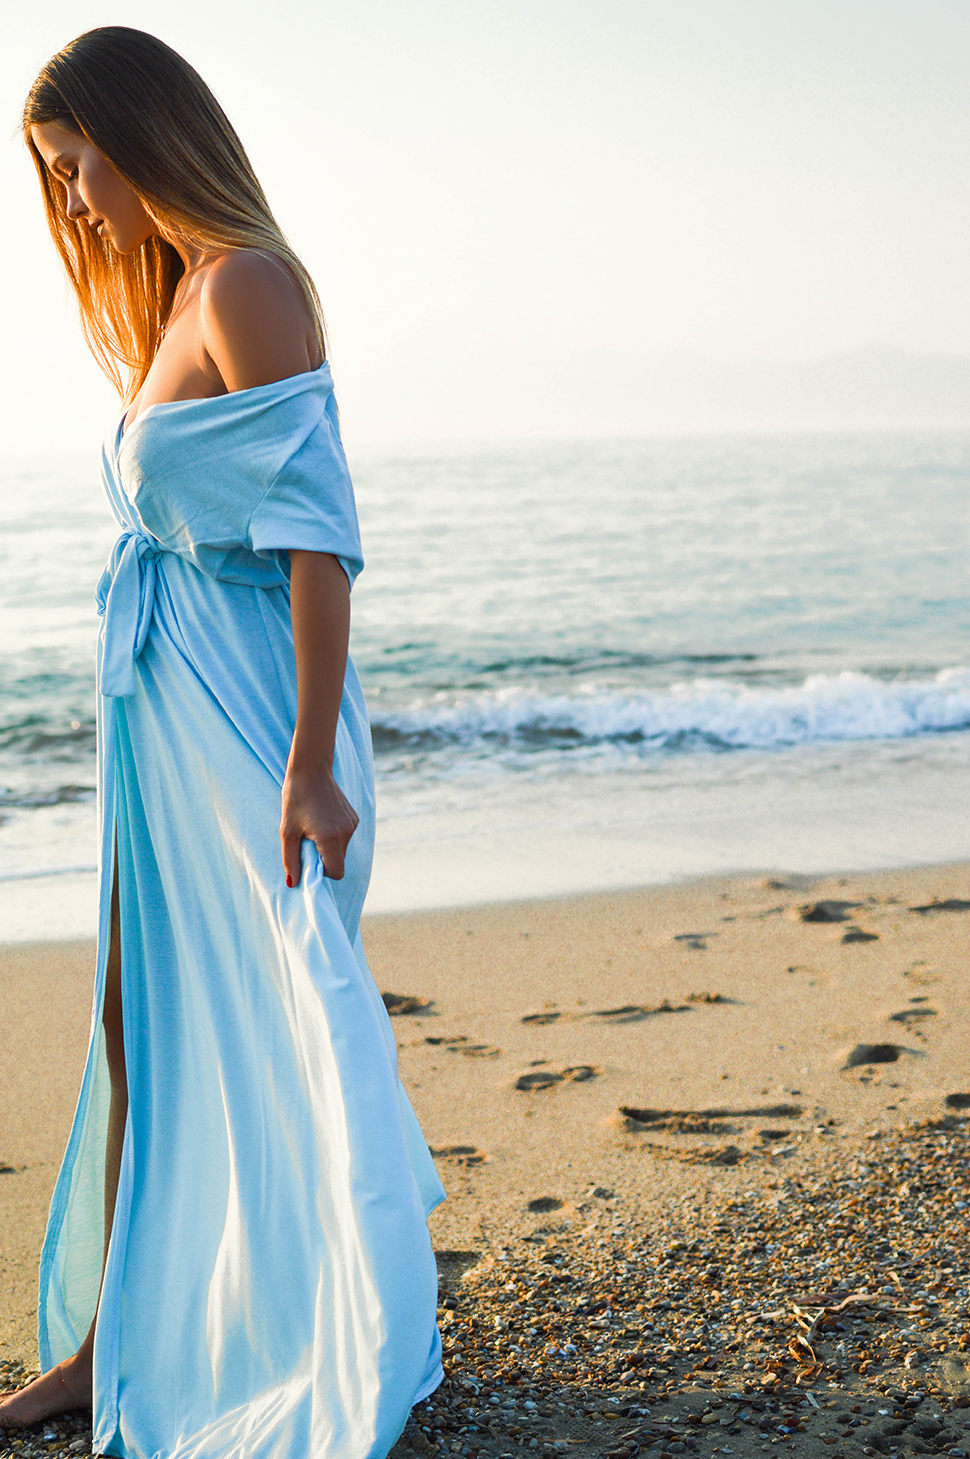 5 Reasons Why To Look More Feminine in Greece by Tamara Bellis